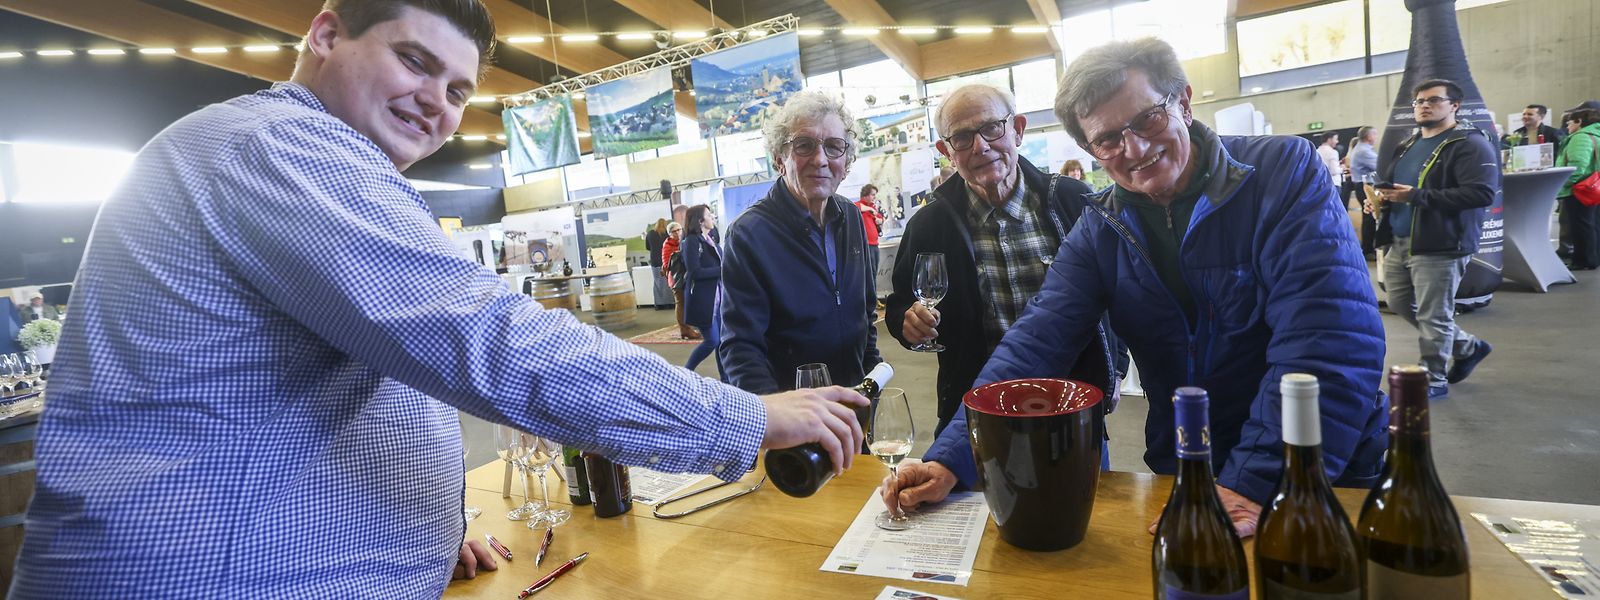 Bei der Wäikues in der Däichhal bietet sich die erste Gelegenheit, die Weine und Crémants des neuen Jahrgangs zu verkosten. 